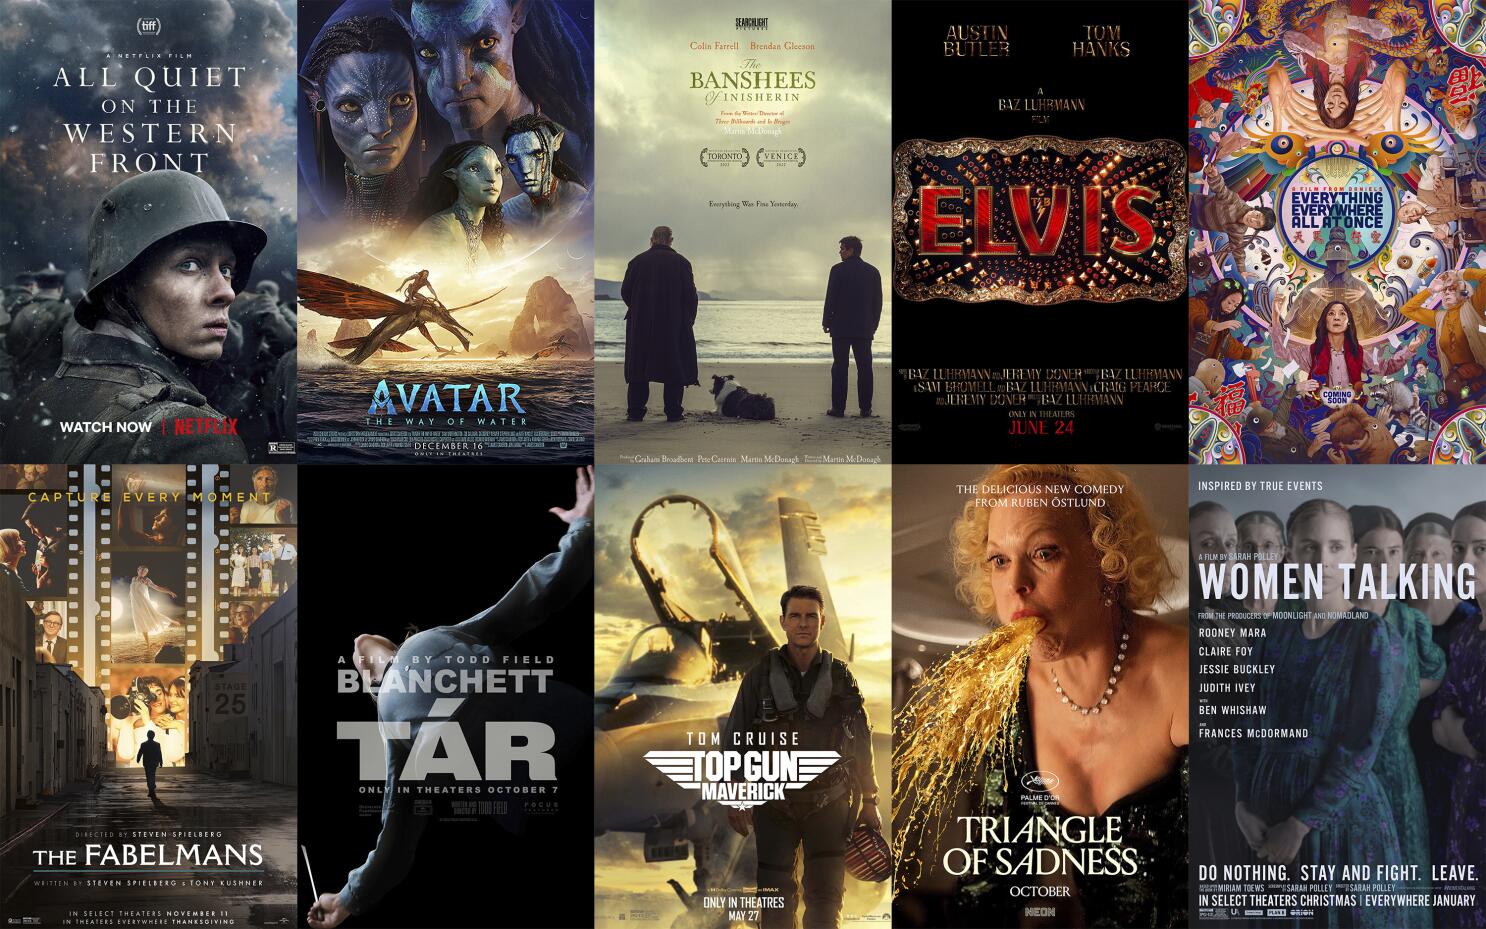 Las mejores películas de 2020, el año en el que cambió la